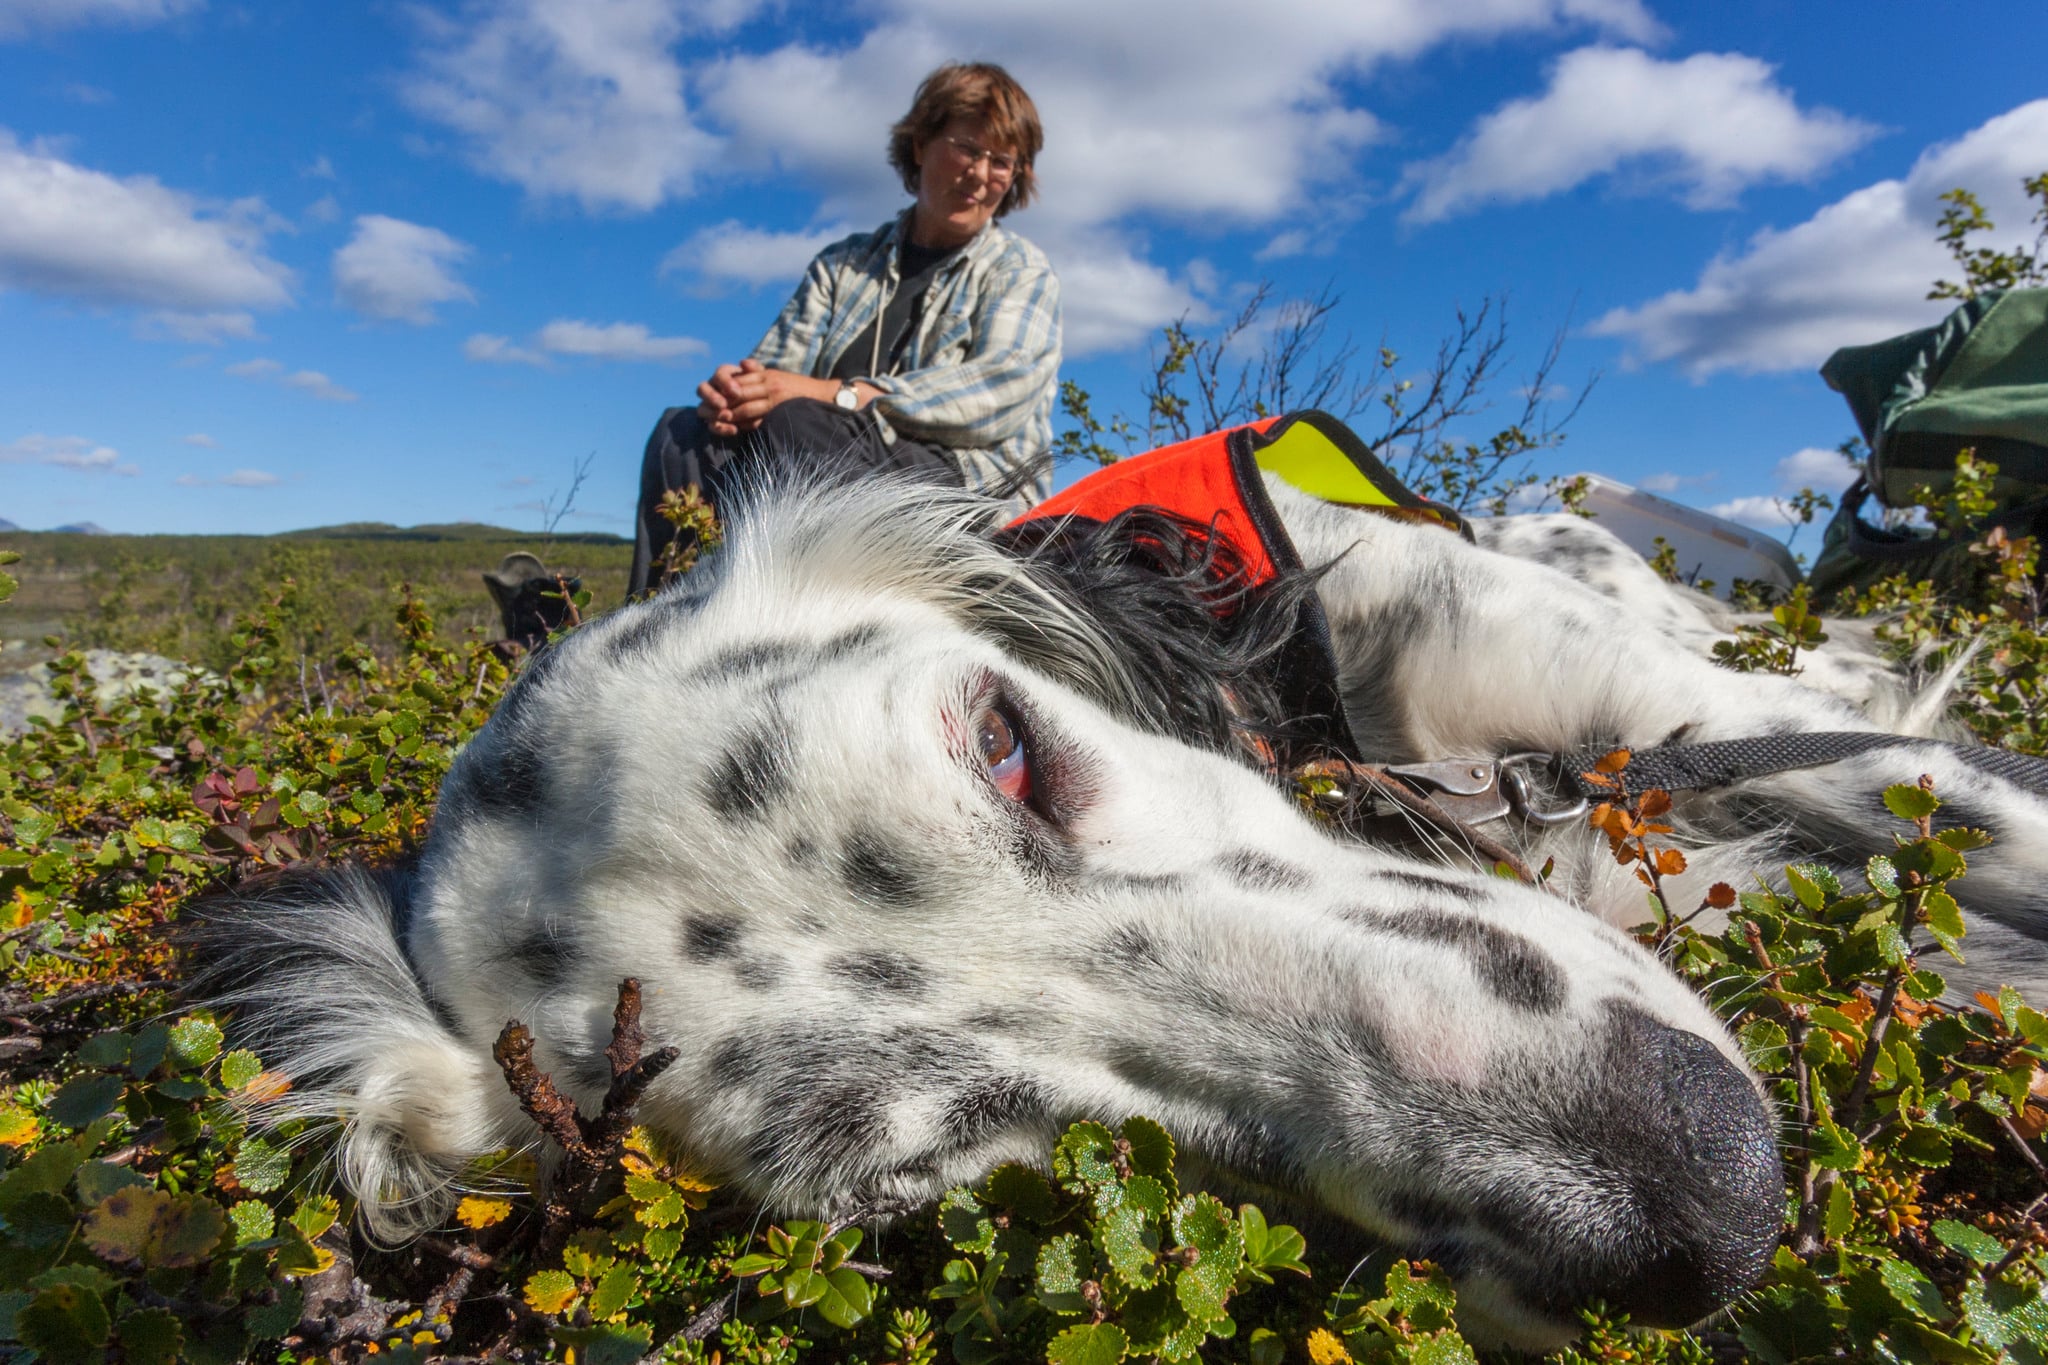 Småviltjakt på statens mark ovan odlingsgränsen får upplåtas till alla jägare efter den 15 september. Foto: Kjell-Erik Moseid